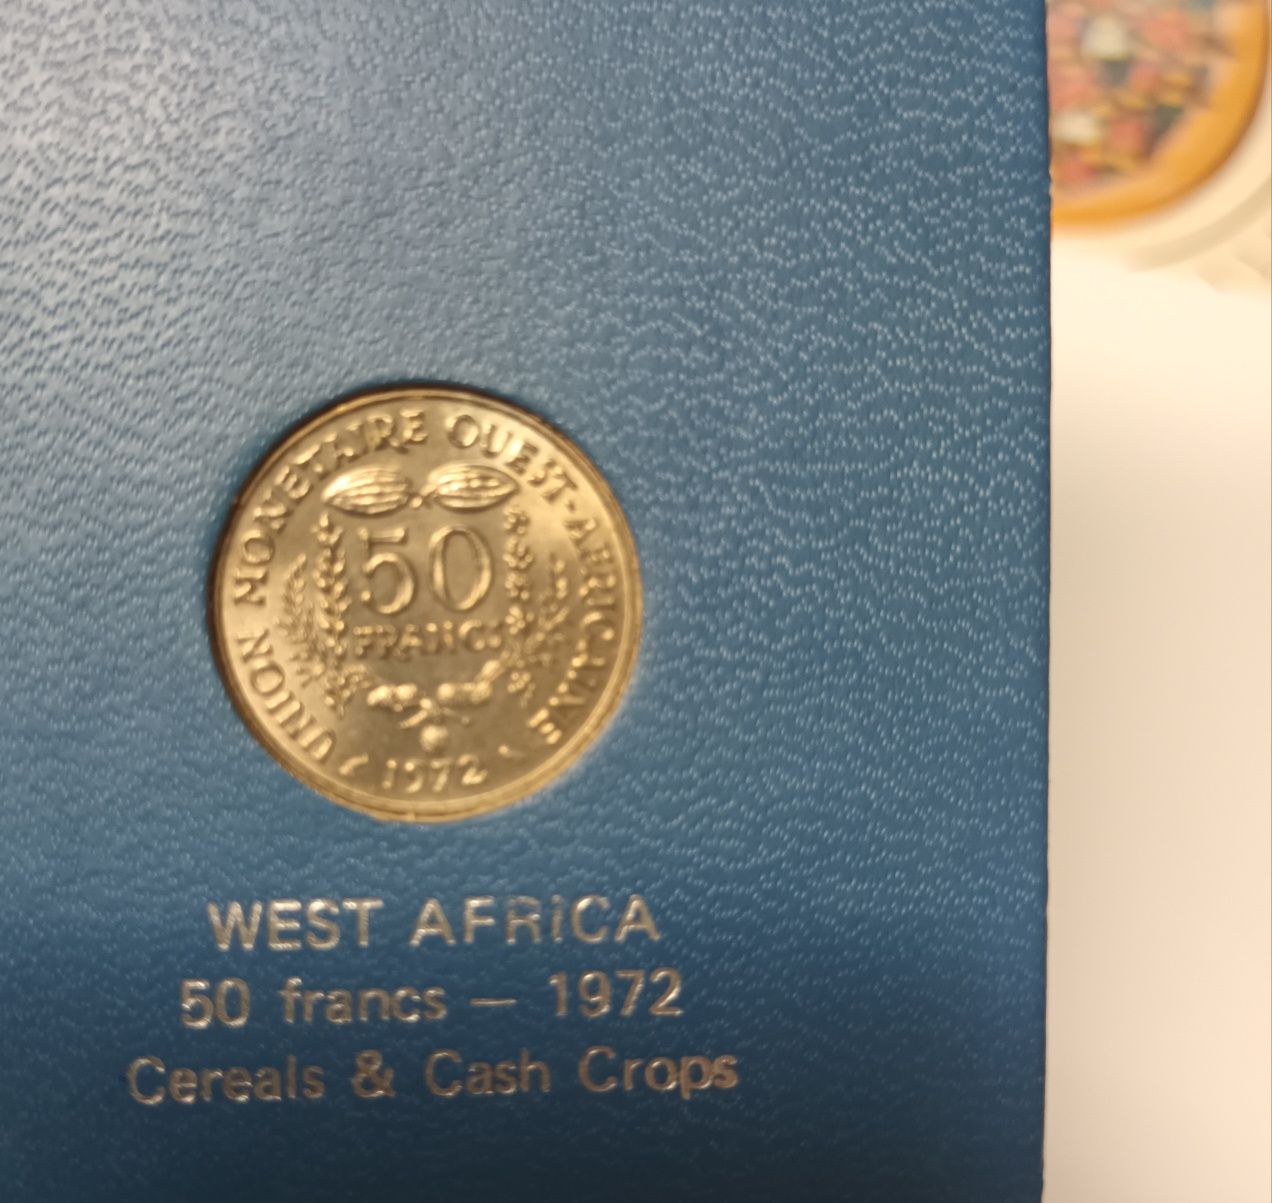 West Africa 50 francs